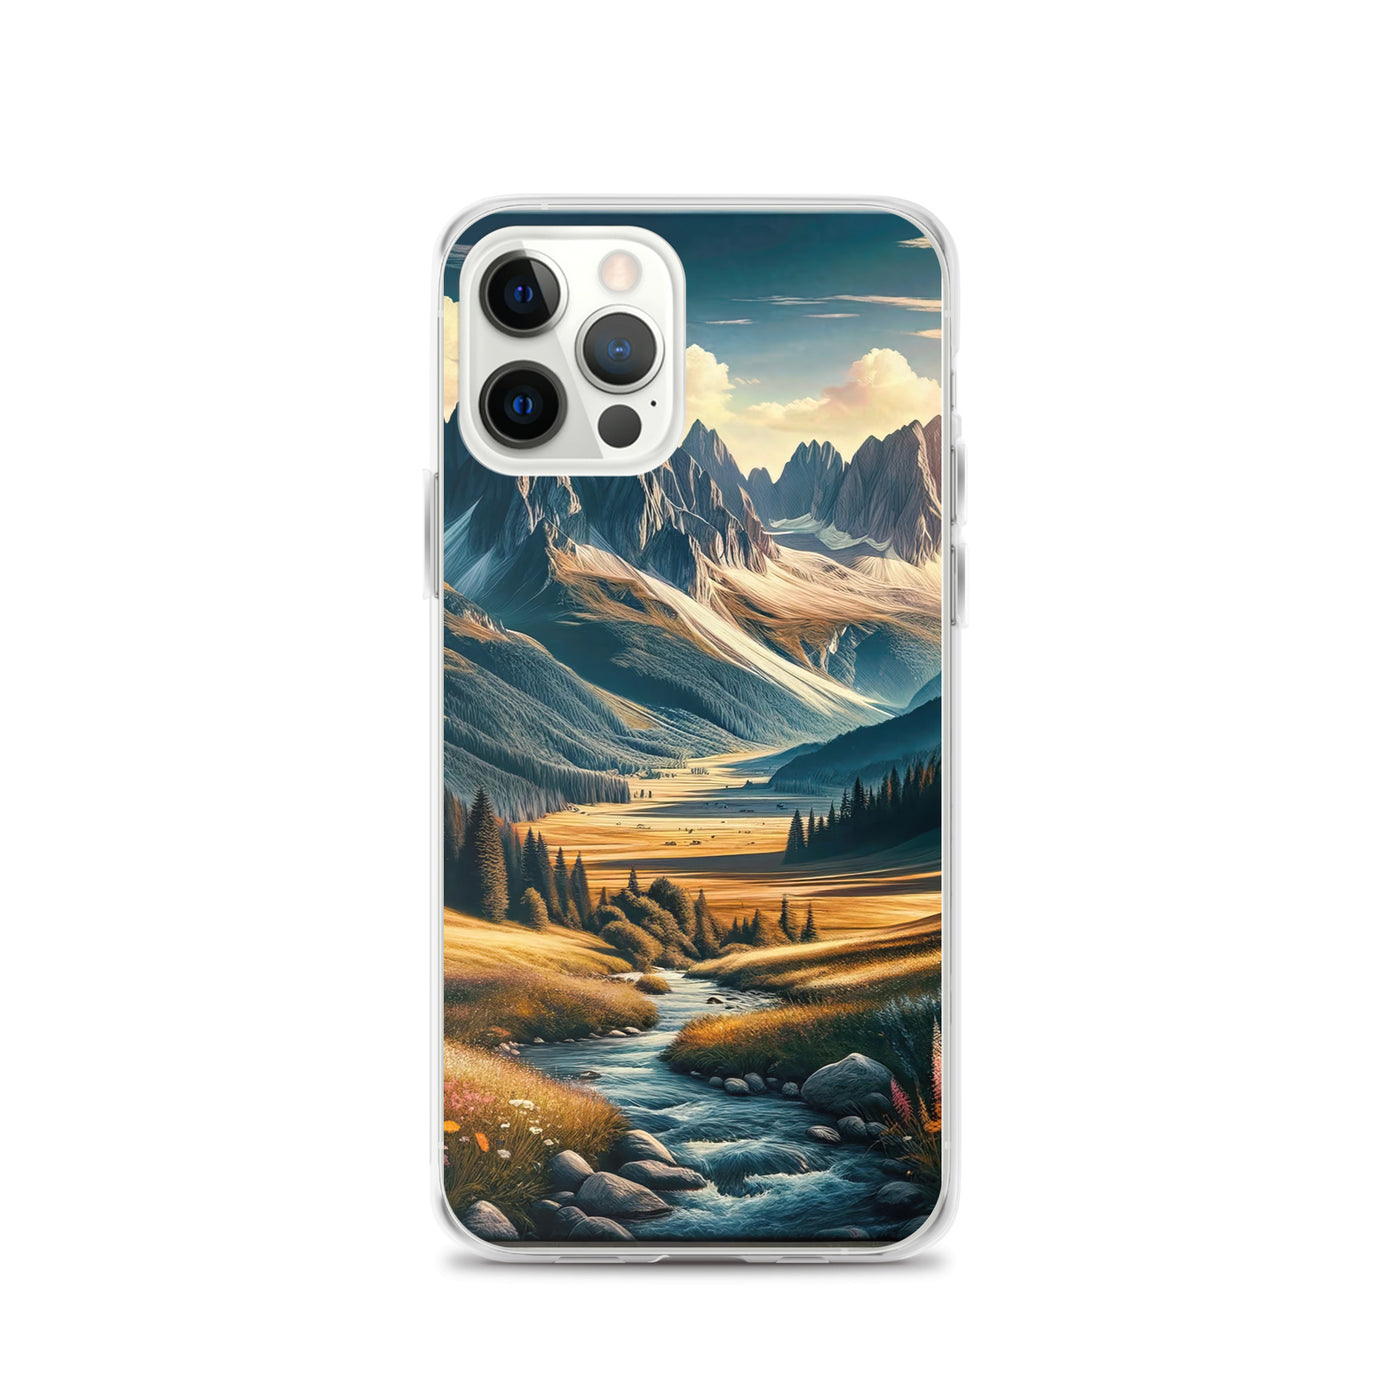 Quadratisches Kunstwerk der Alpen, majestätische Berge unter goldener Sonne - iPhone Schutzhülle (durchsichtig) berge xxx yyy zzz iPhone 12 Pro